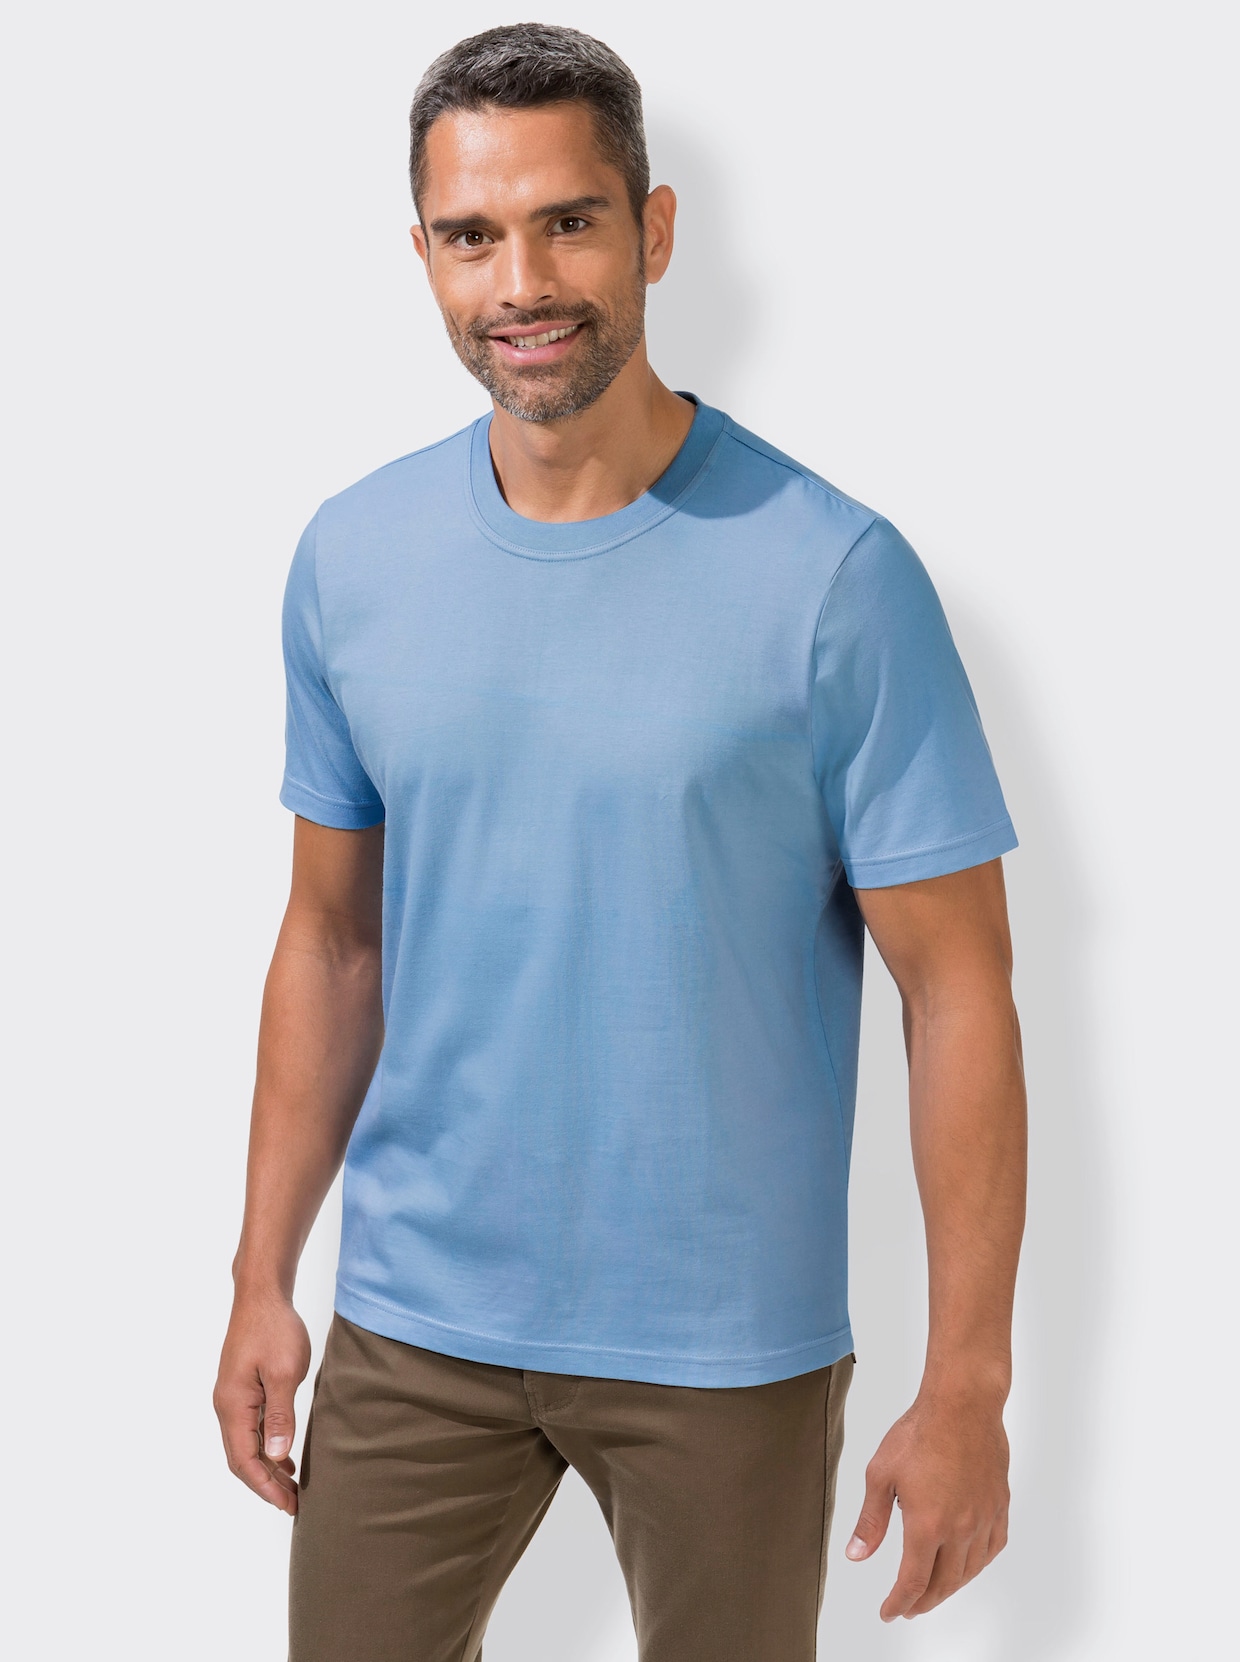 KINGsCLUB Shirt - antraciet + blauw + wit